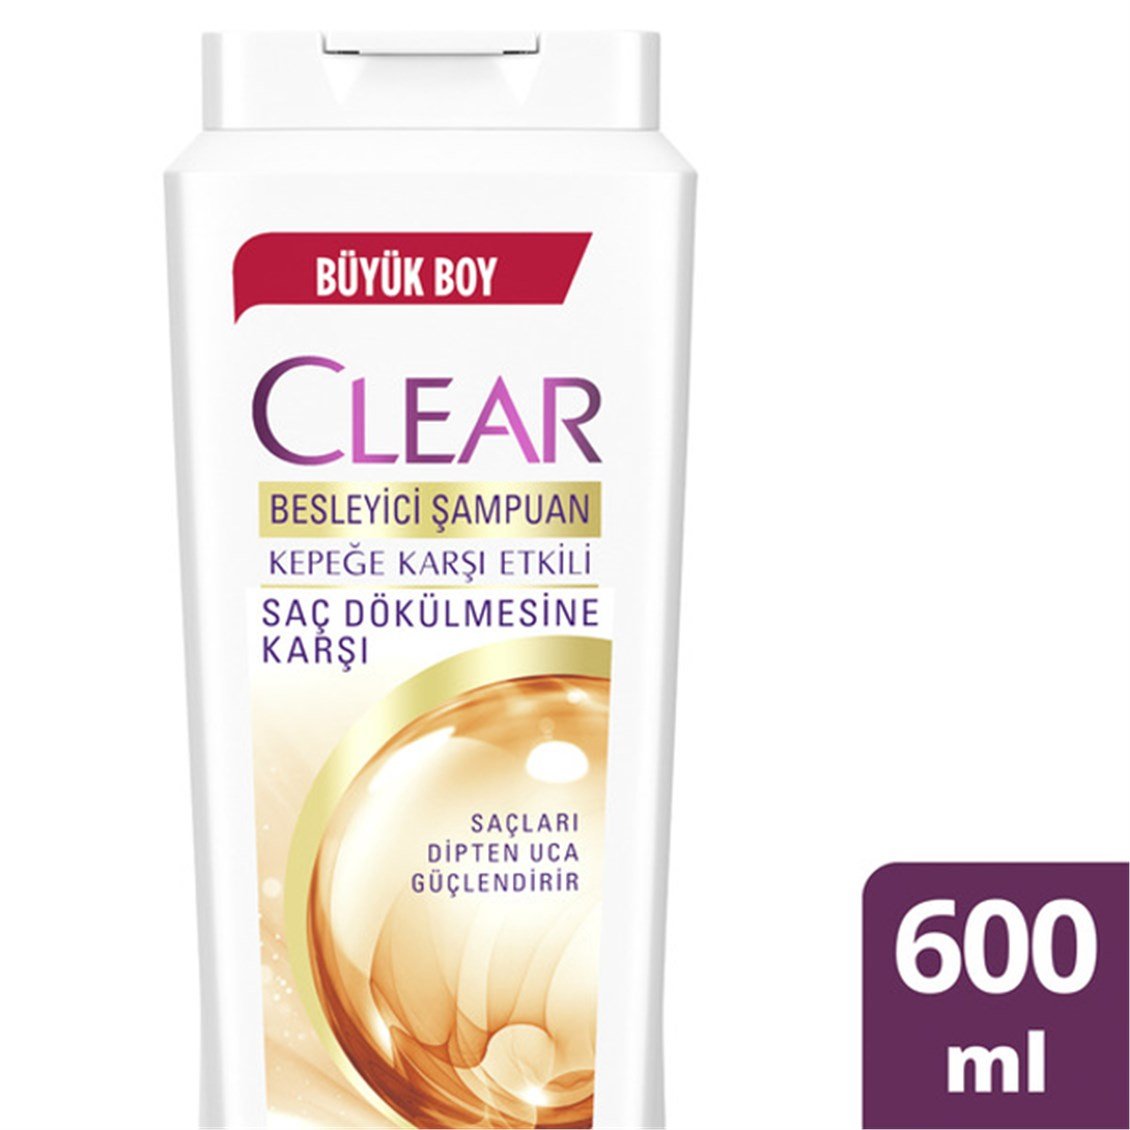 Clear Saç Dökülmesine Karşı Etkili Şampuan 600 ml - Onur Market